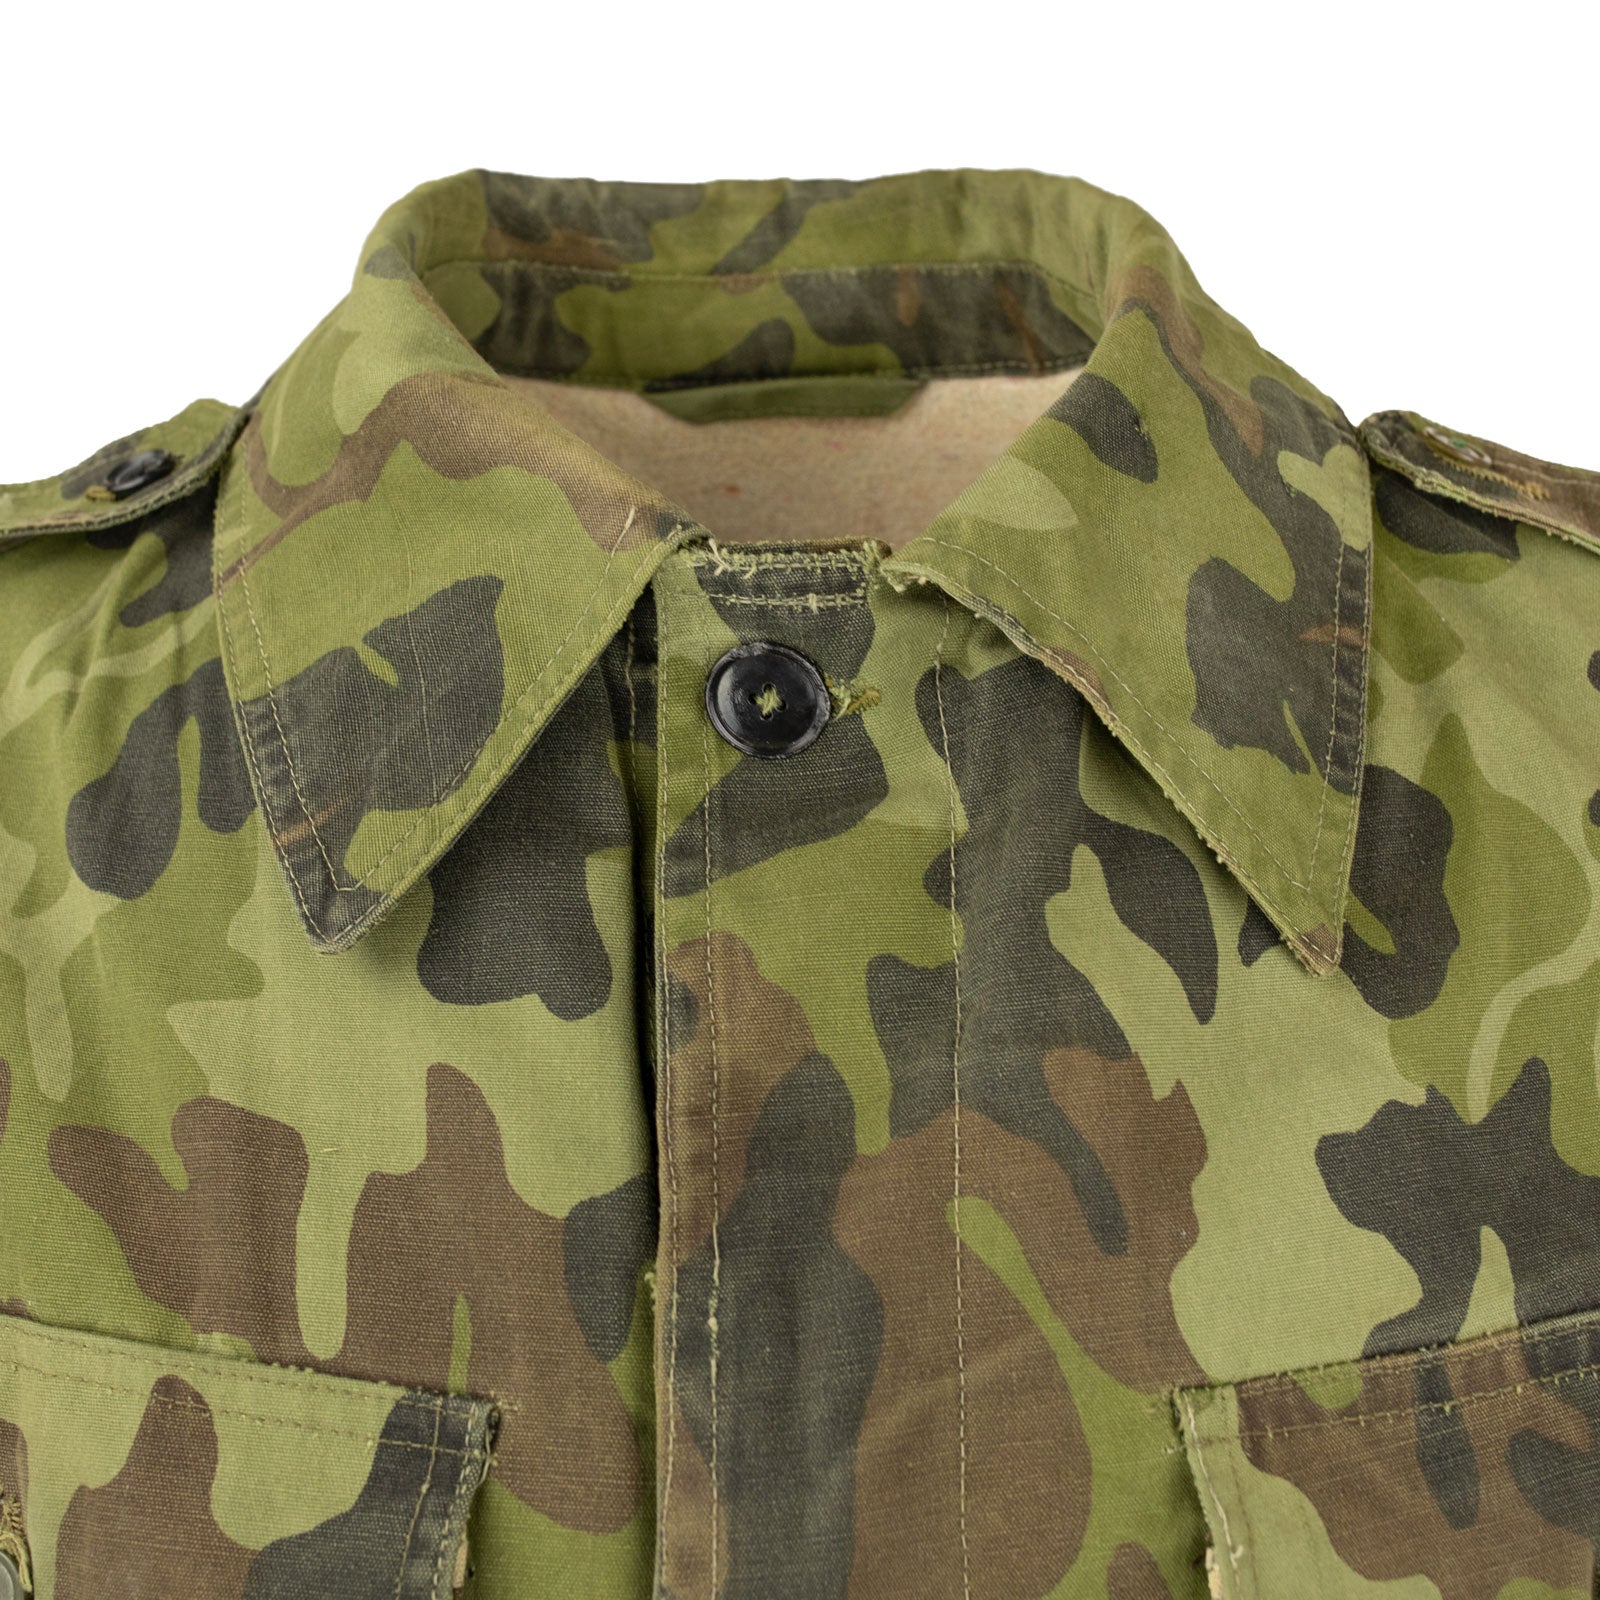 Romanian M1990 / M90 "Leaf" Pattern Jacket W/Built In Liner